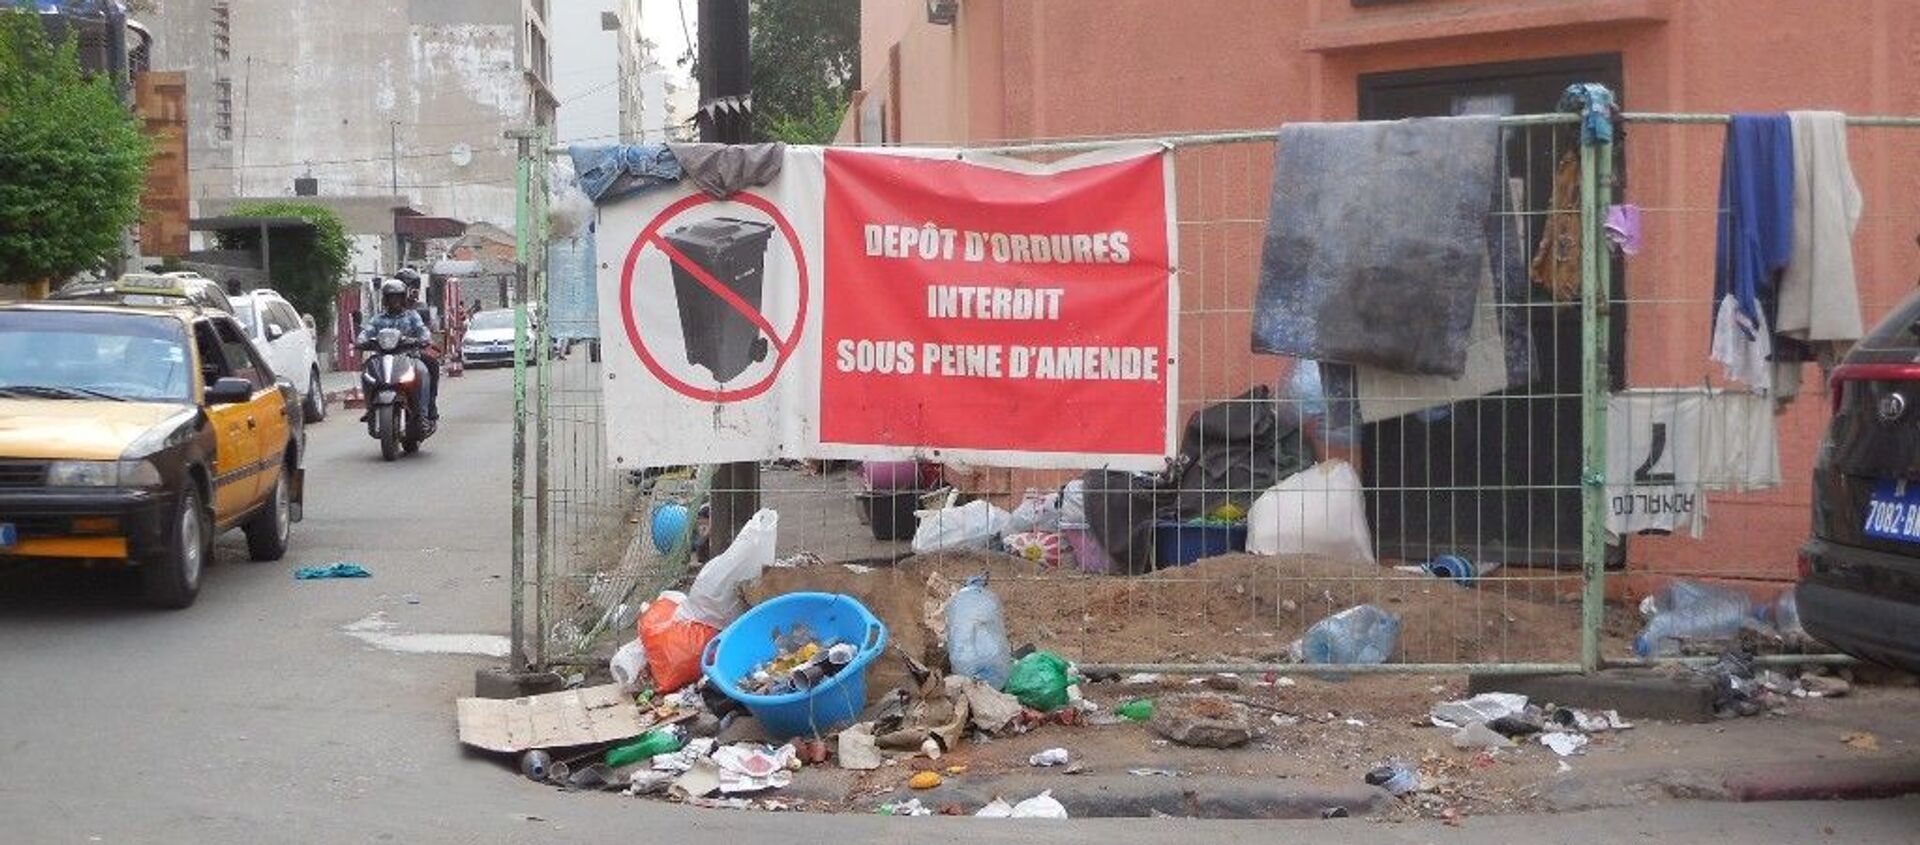 Un dépôt sauvage d’ordures dans le quartier du Plateau, à Dakar, en juillet 2019. - Sputnik Afrique, 1920, 08.08.2019